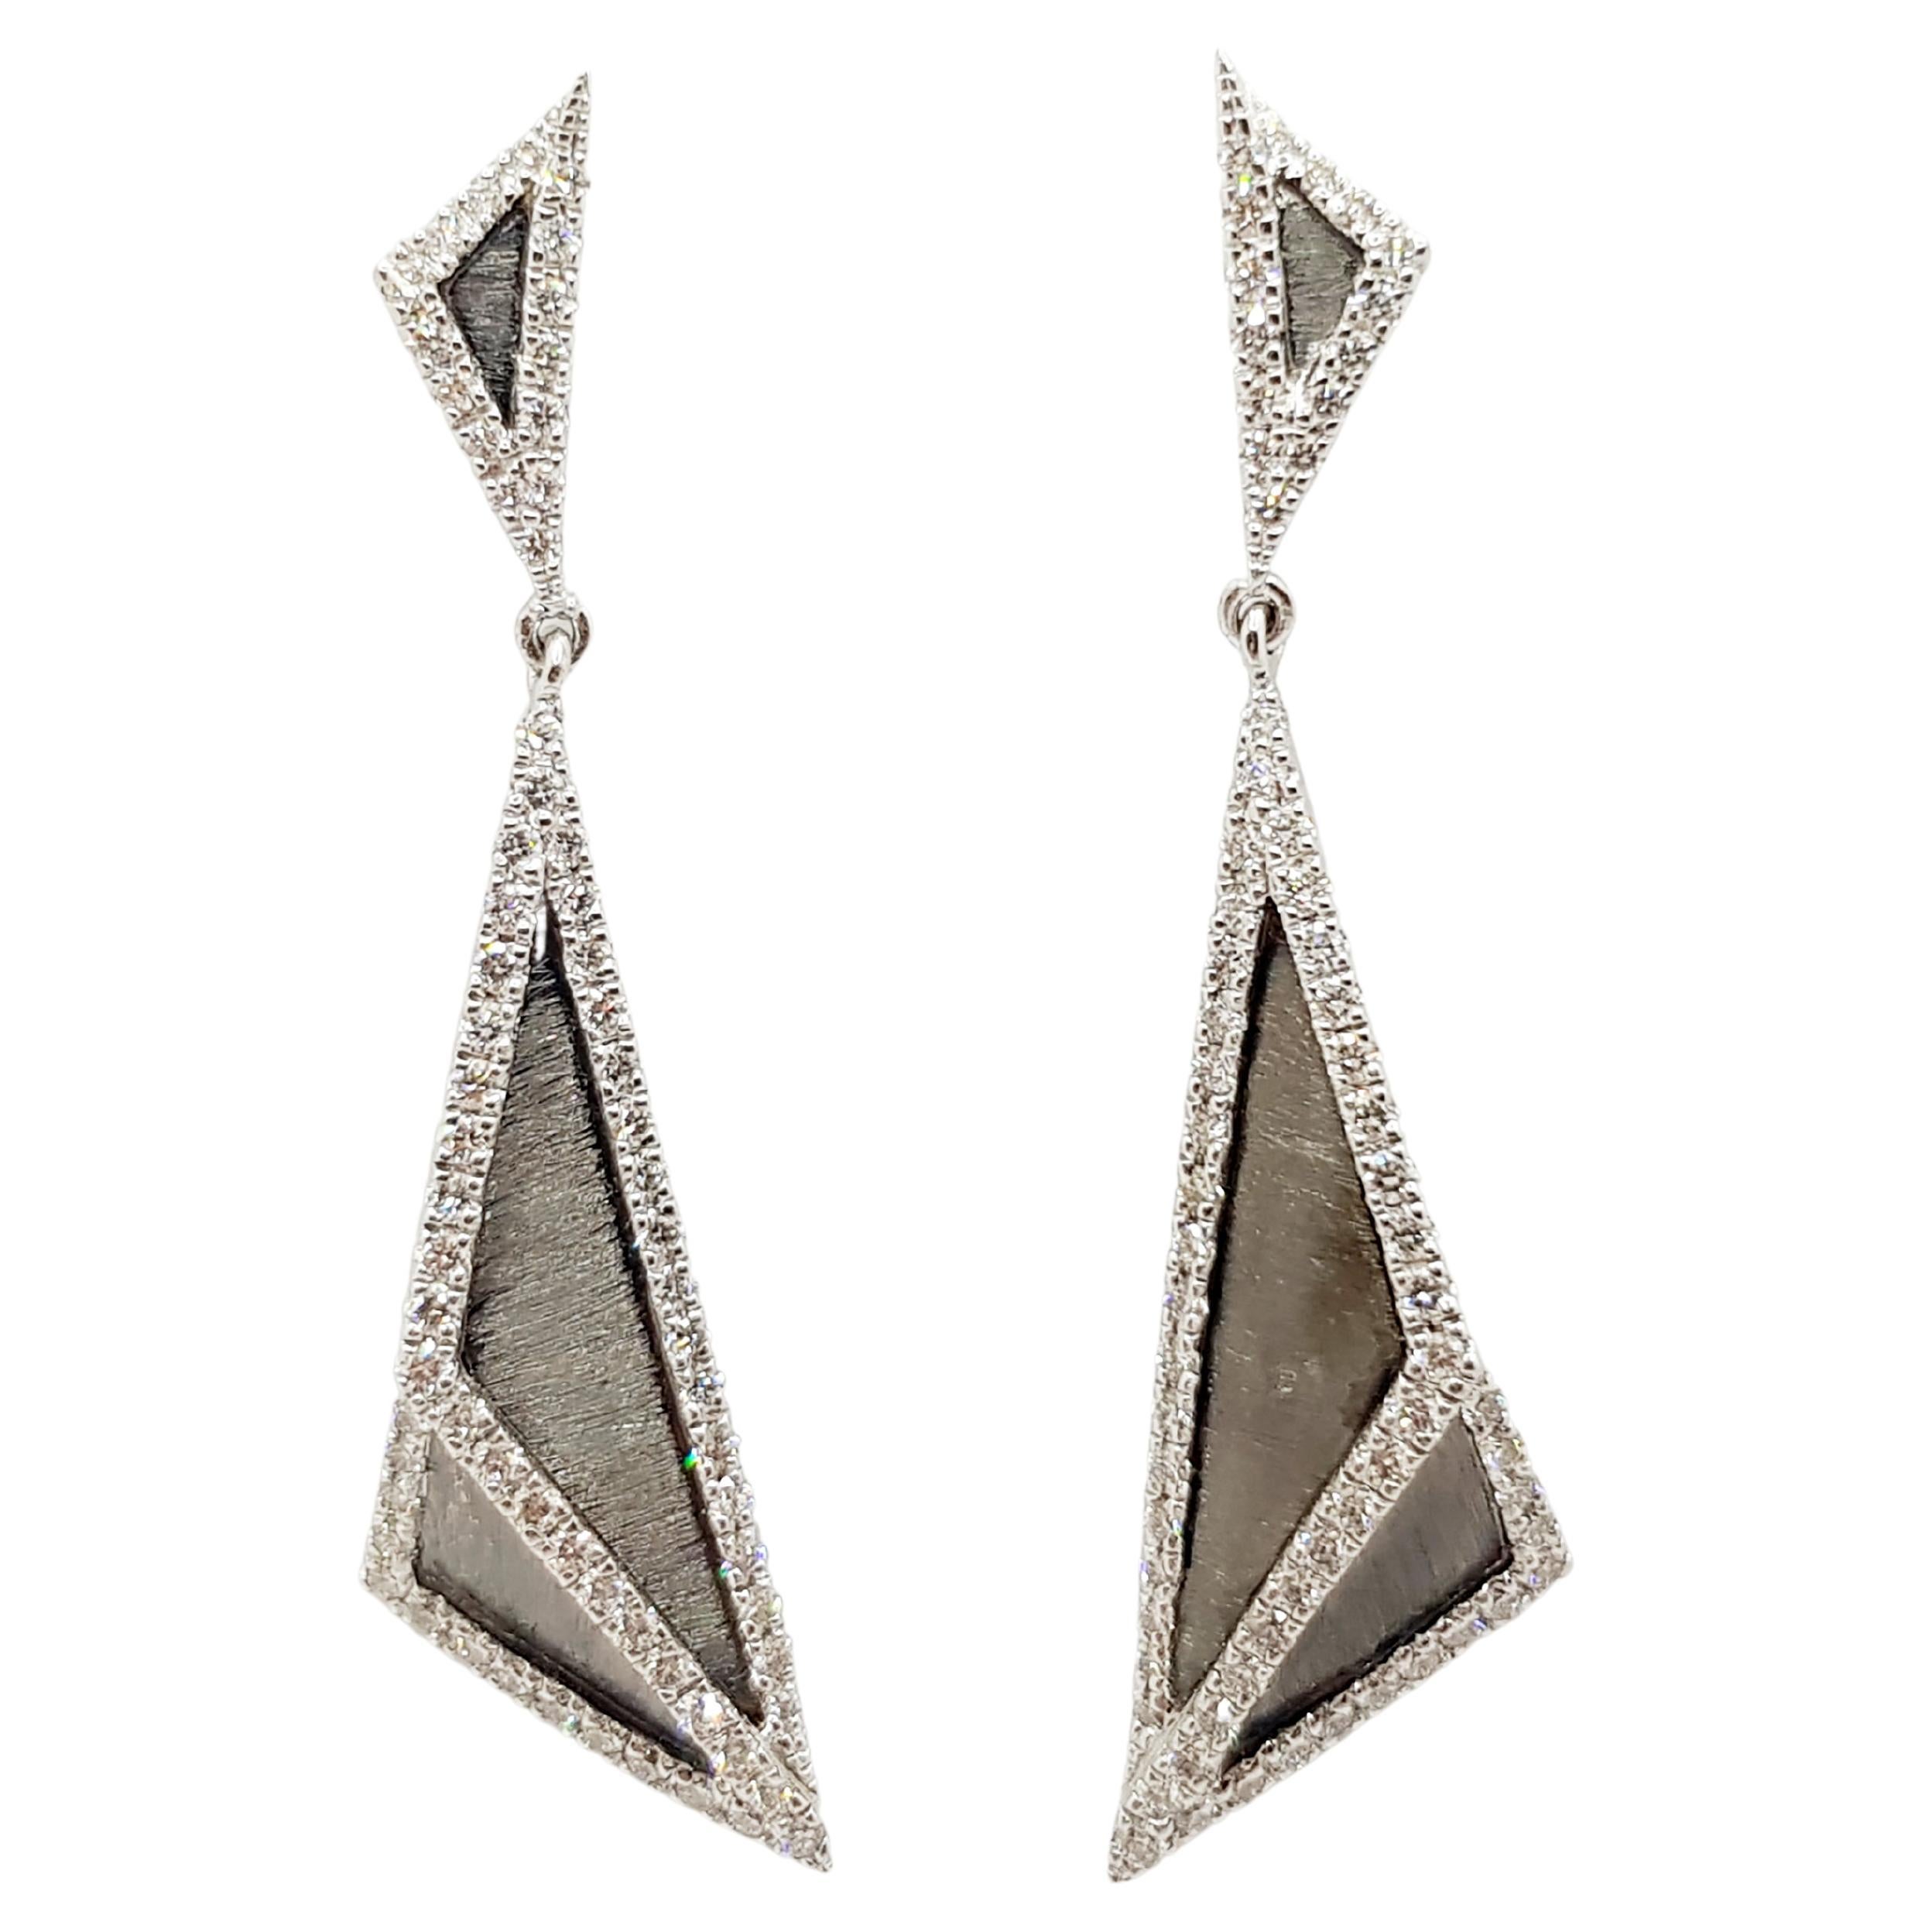 Diamond Earrings Set in 18 Karat White Gold Settings by Kavant & Sharart For Sale